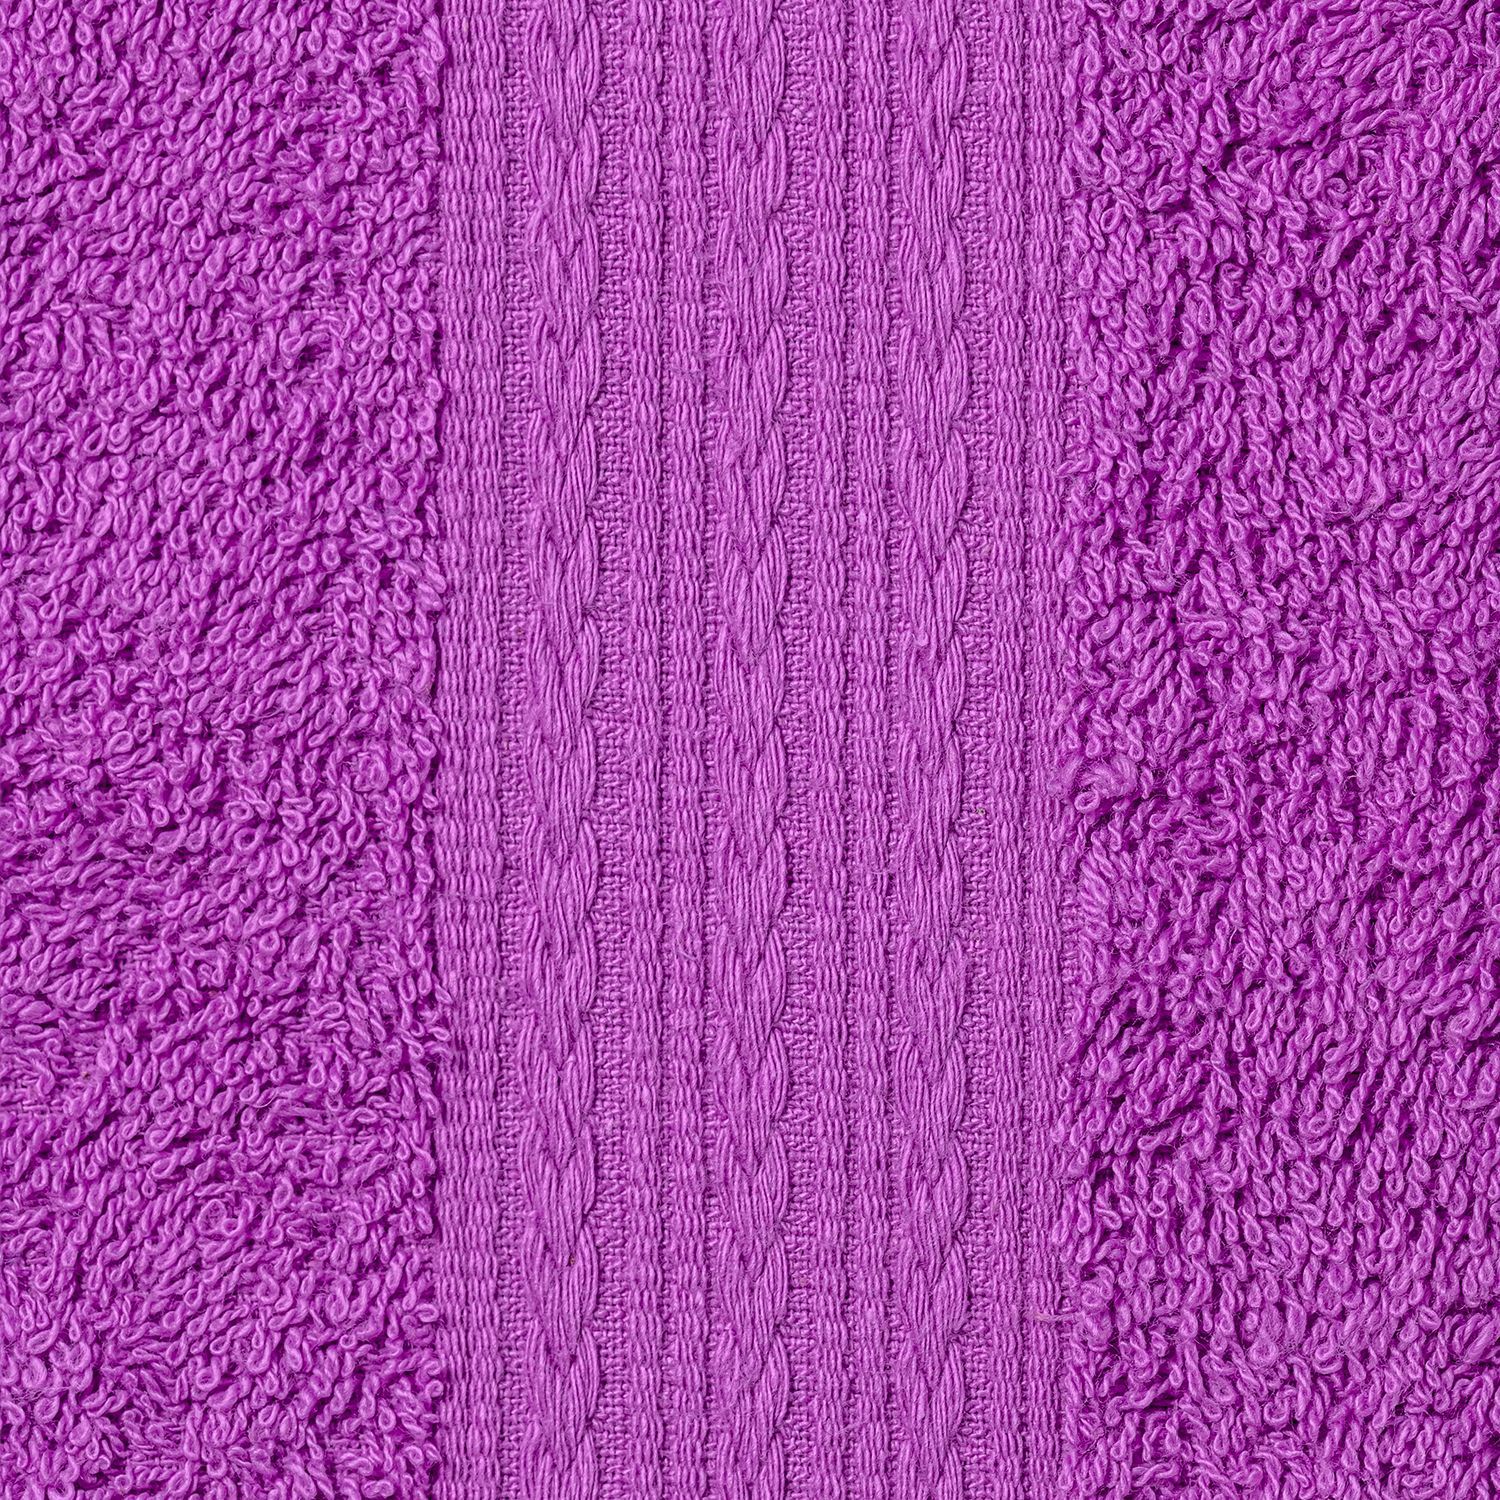 Фиолетовое полотенце. Лавандовое полотенце. Светло фиолетовые полотенца. Стол полотенца фиолетовые тона.